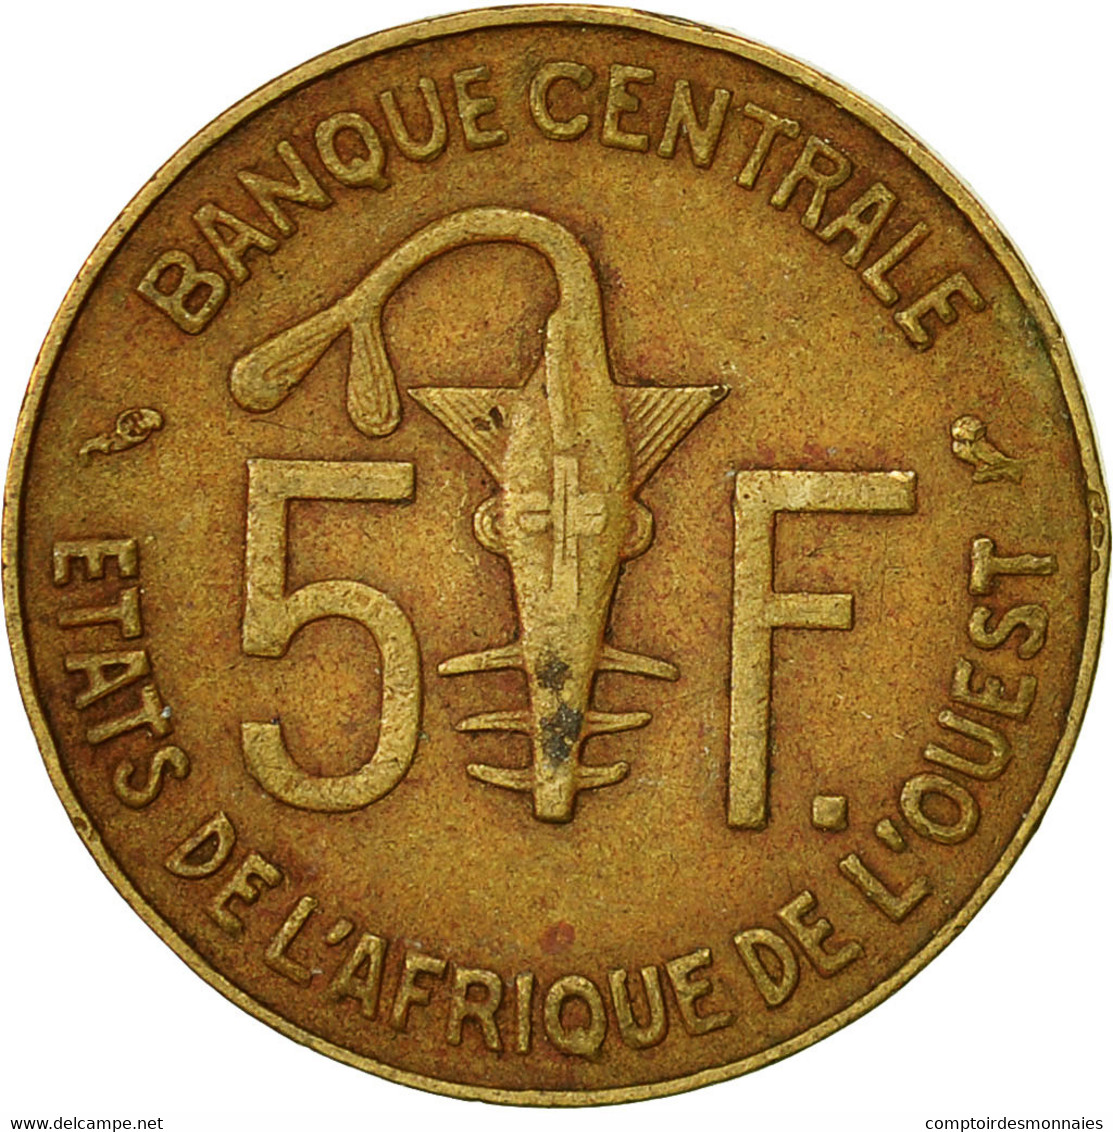 Monnaie, West African States, 5 Francs, 1974, Paris, TTB - Côte-d'Ivoire